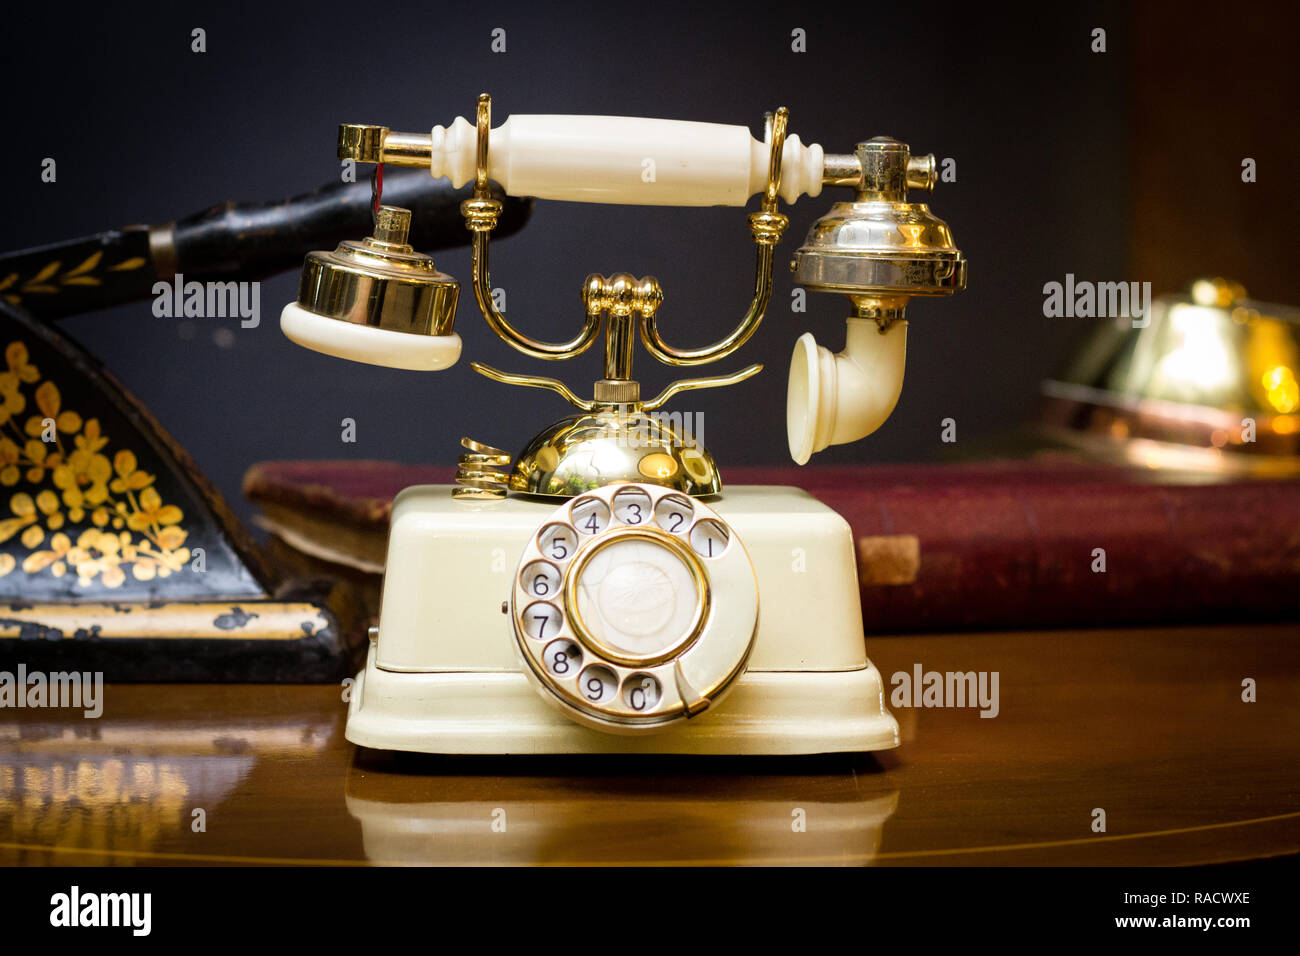 Un vieux téléphone plaqué or avec un cadran rotatif sur une table antique dans le foyer du Zimbabwe, le plus vieil hôtel Meikles Hotel. Banque D'Images